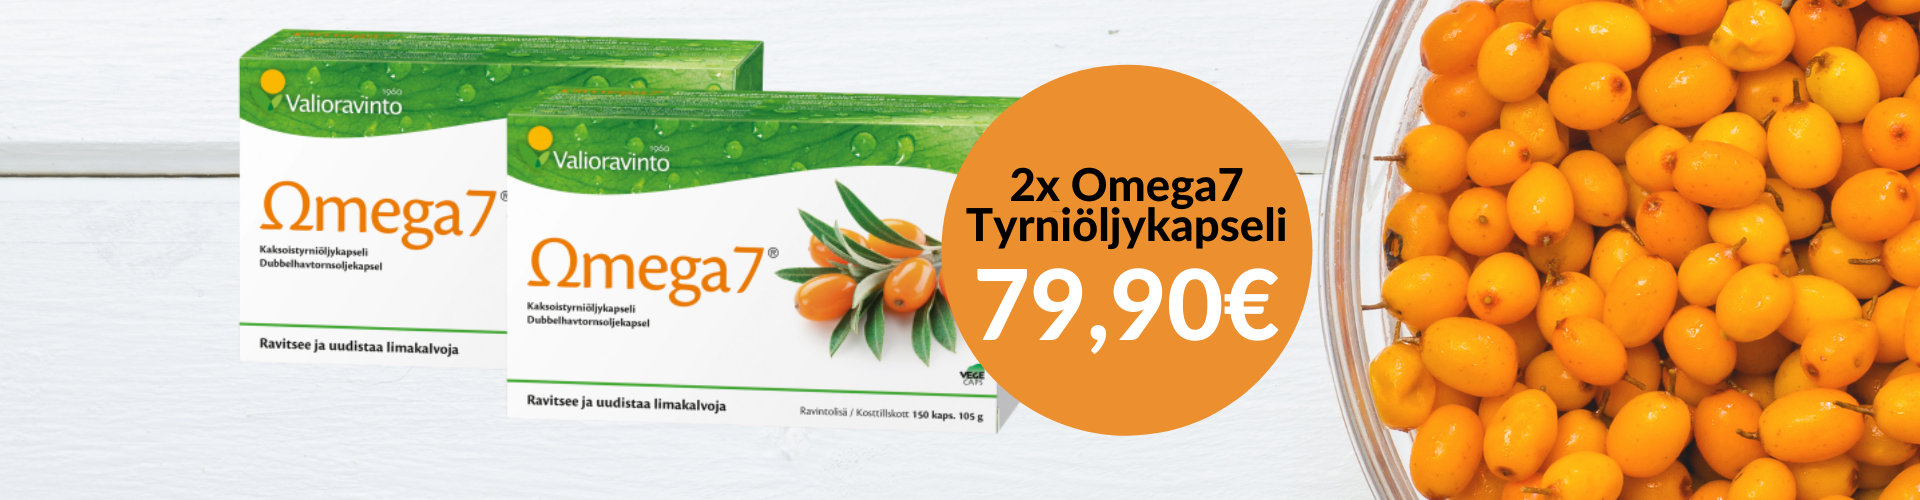 Omega7 tyrniöljykapselit 2x150kaps vain 79,90€